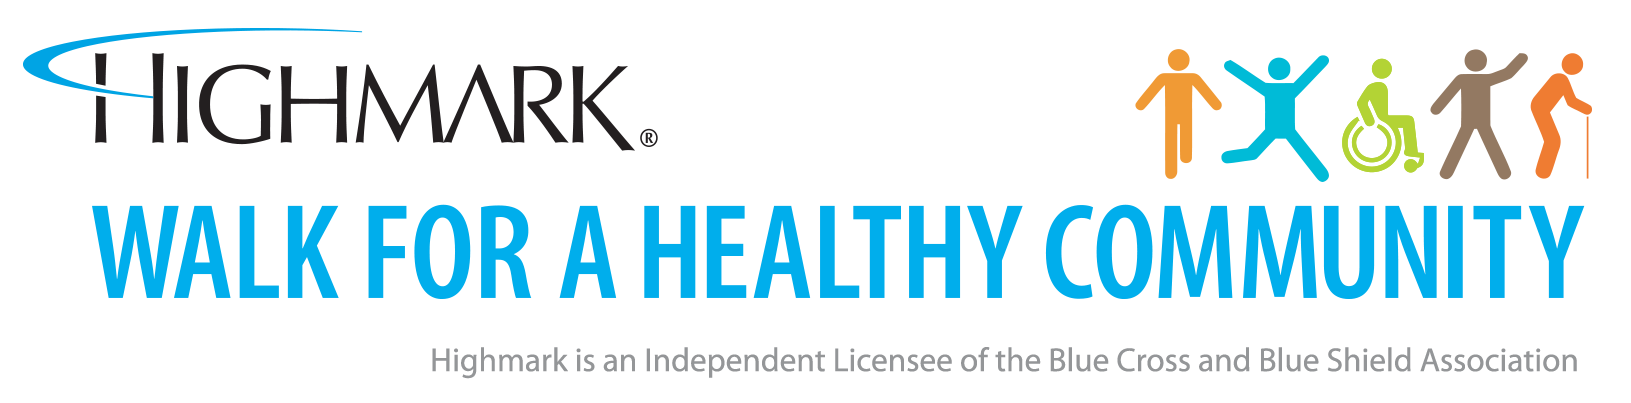 Highmark Walk for a Healthy Community logo